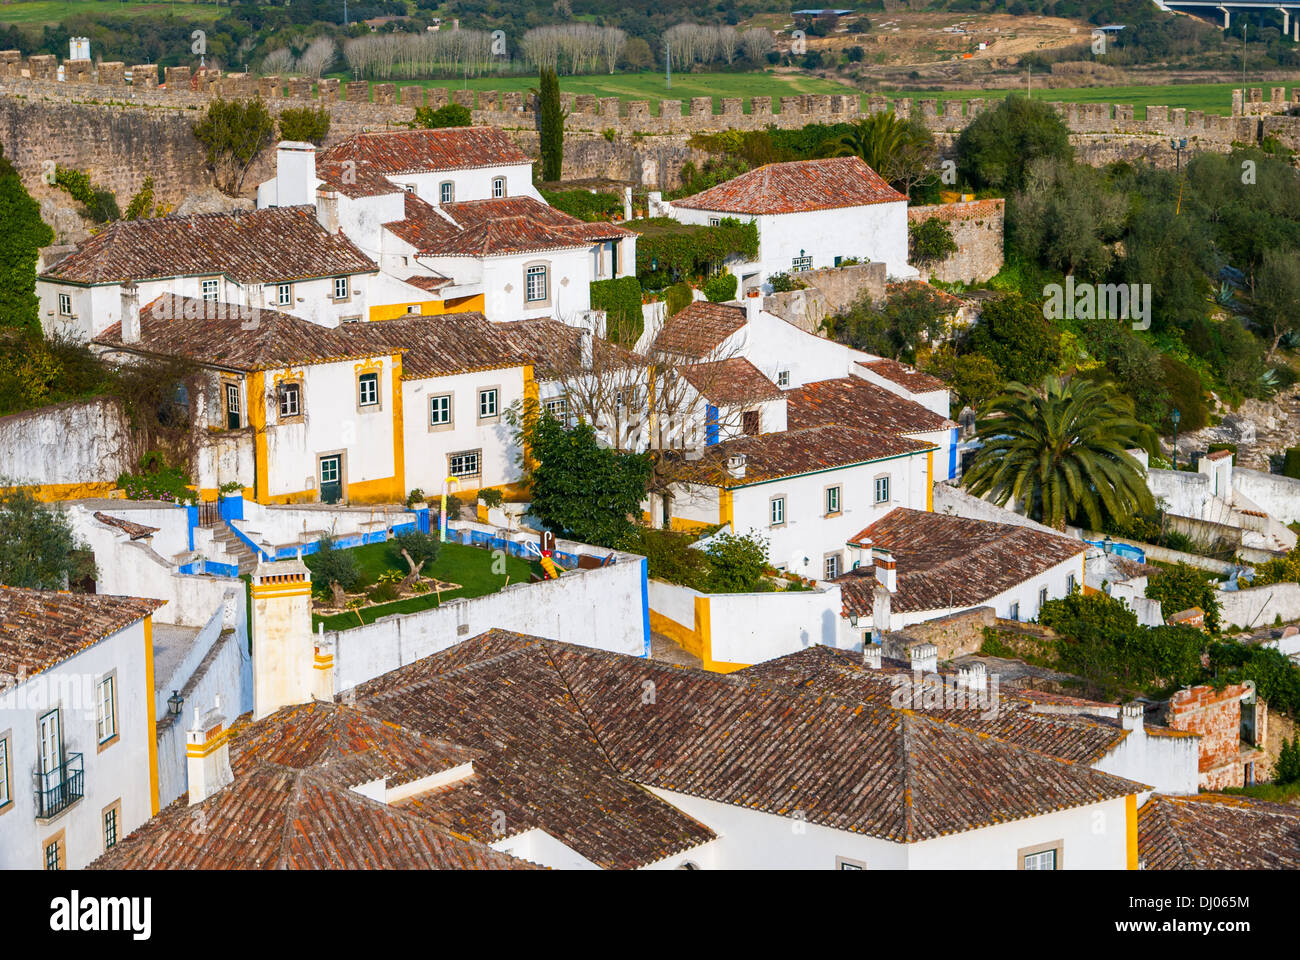 Obidos - vecchia città fortificata in Portogallo. Il nome di Obidos deriva probabilmente dal termine latino oppidum, significato cittadella, Foto Stock